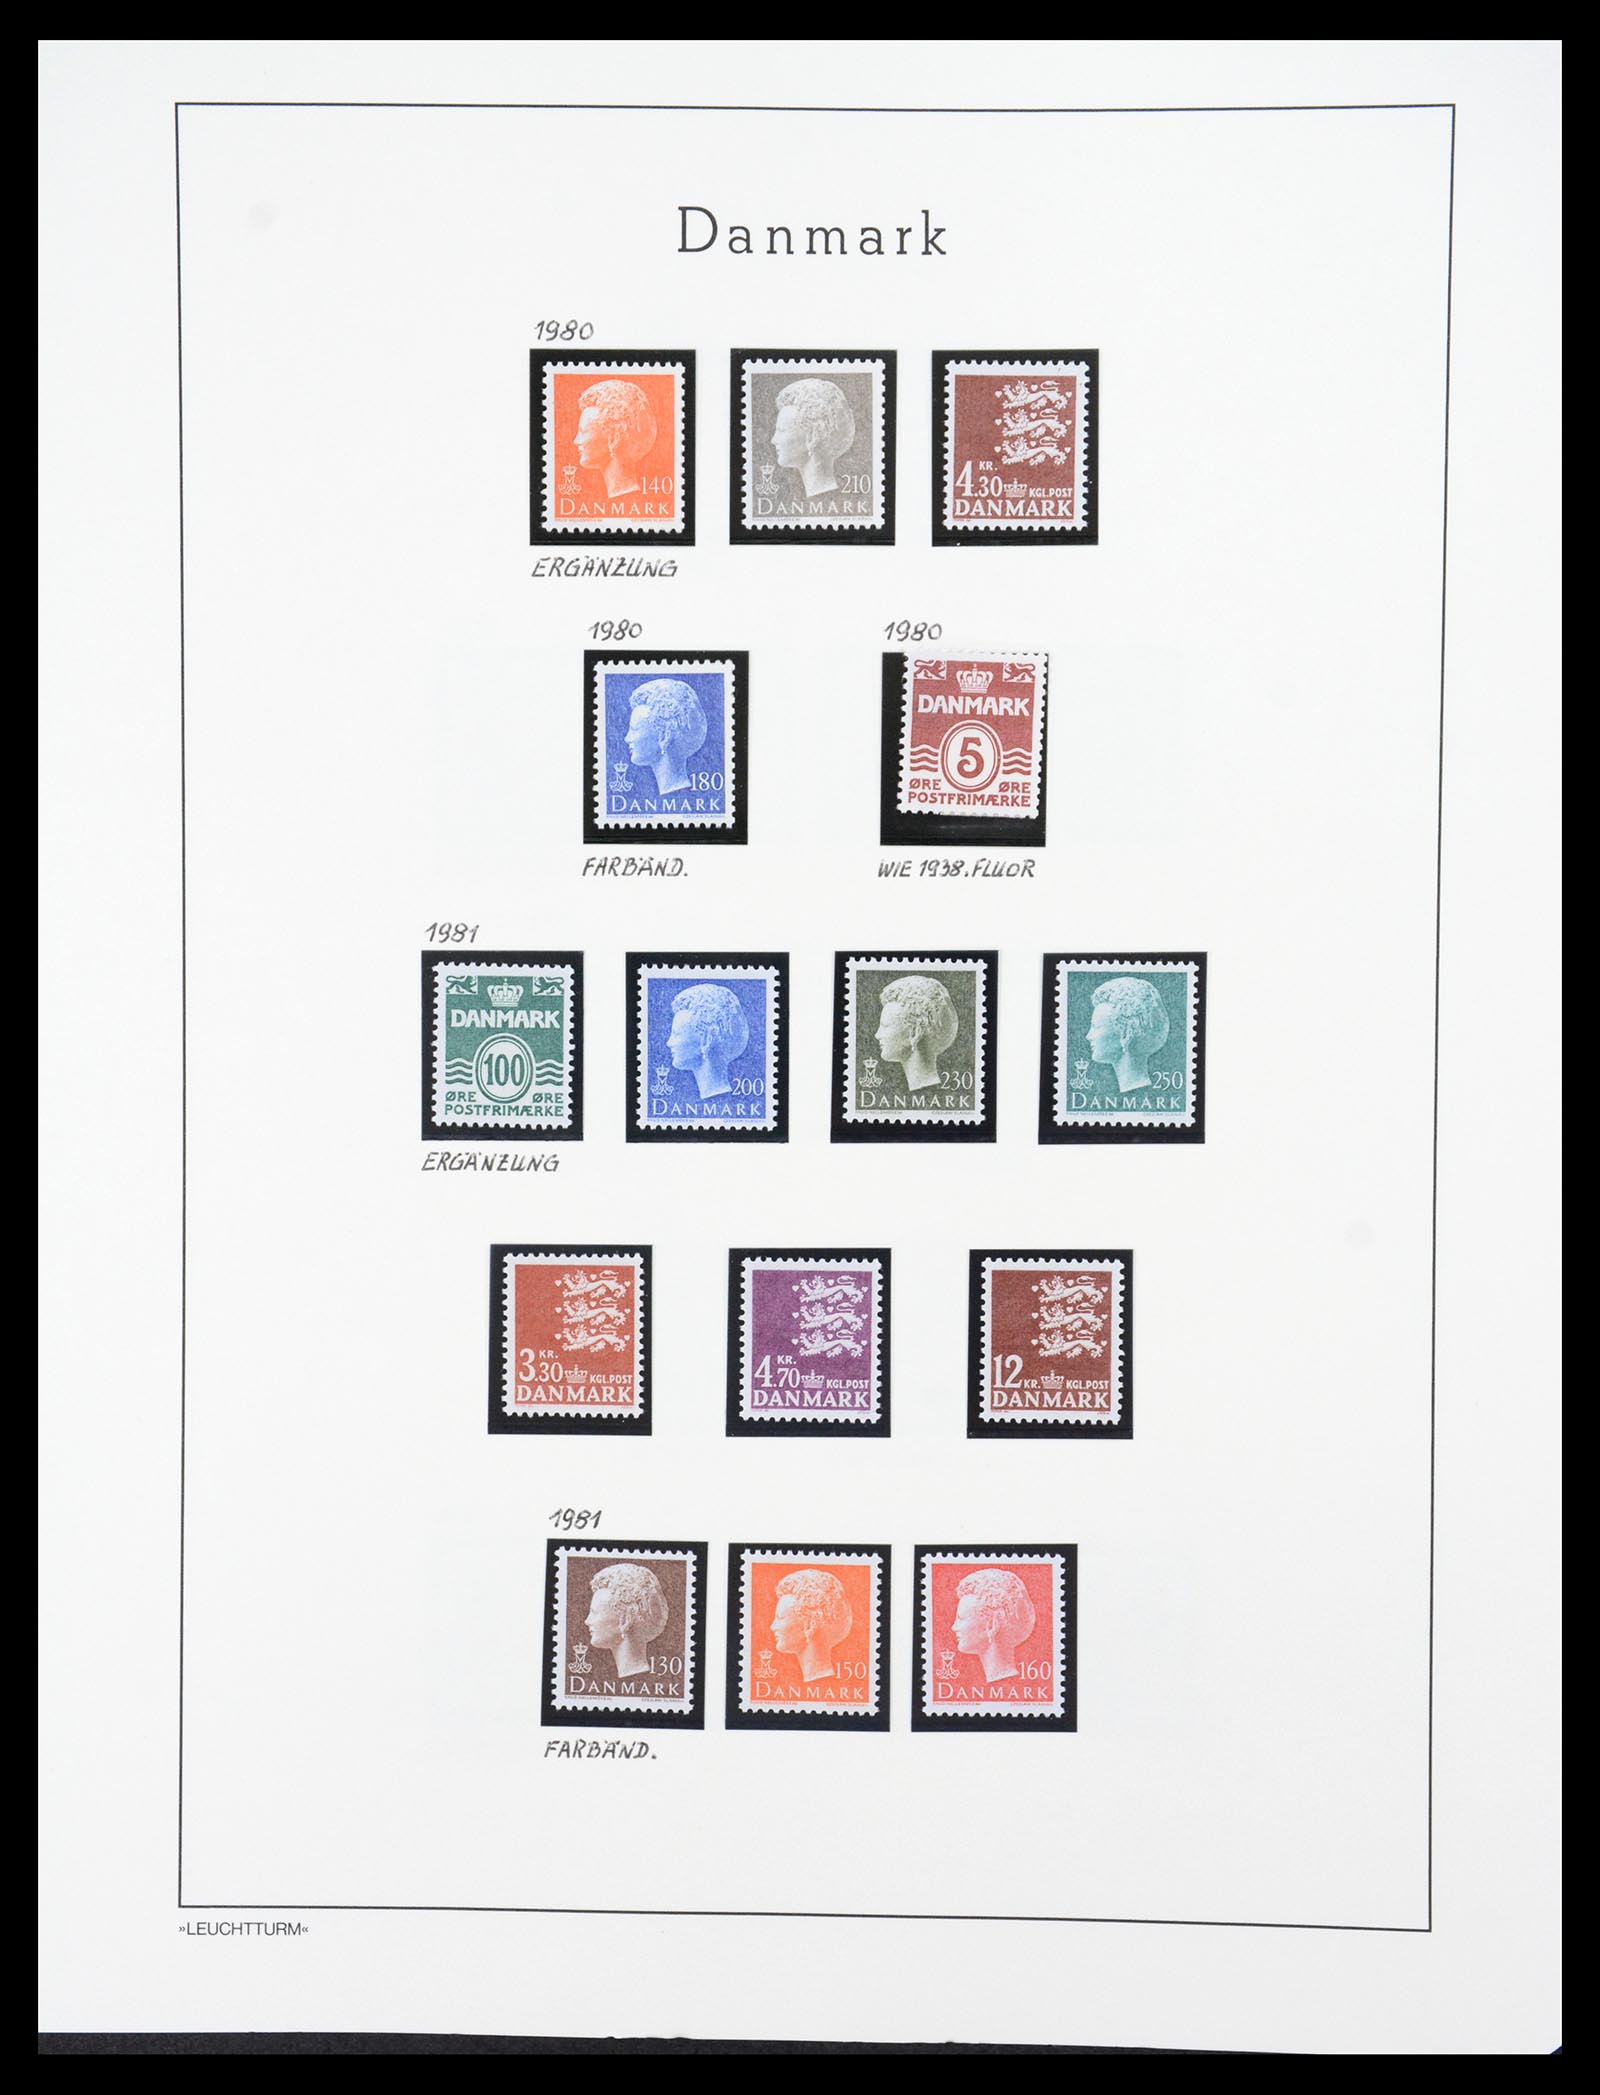 36612 113 - Stamp collection 36612 Denemarken 1851-1990.